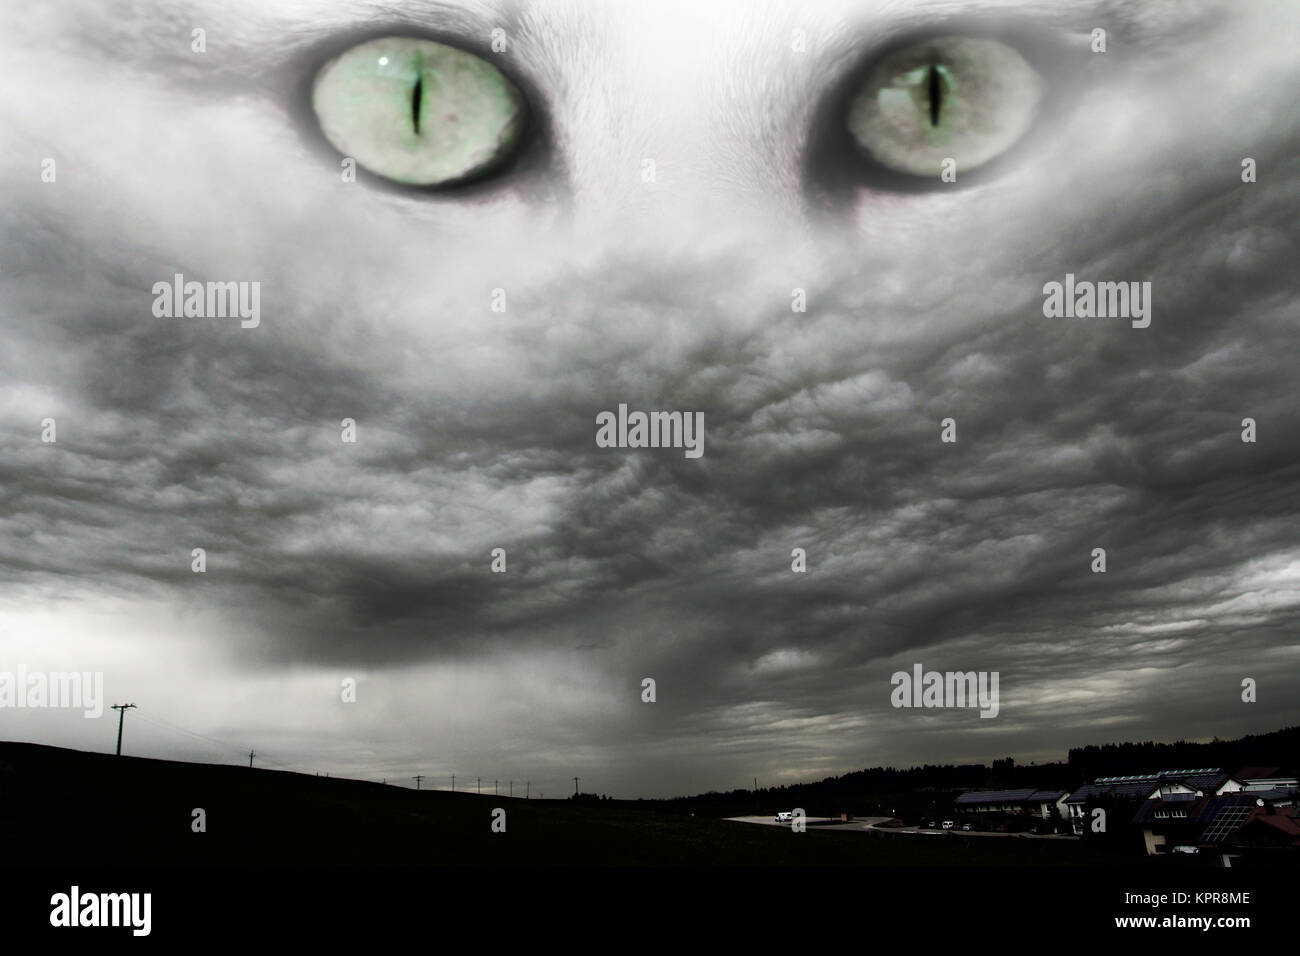 Der dunkle Himmel blickt in Sturmwolken auf die Augen unserer Katze herab Stockfoto